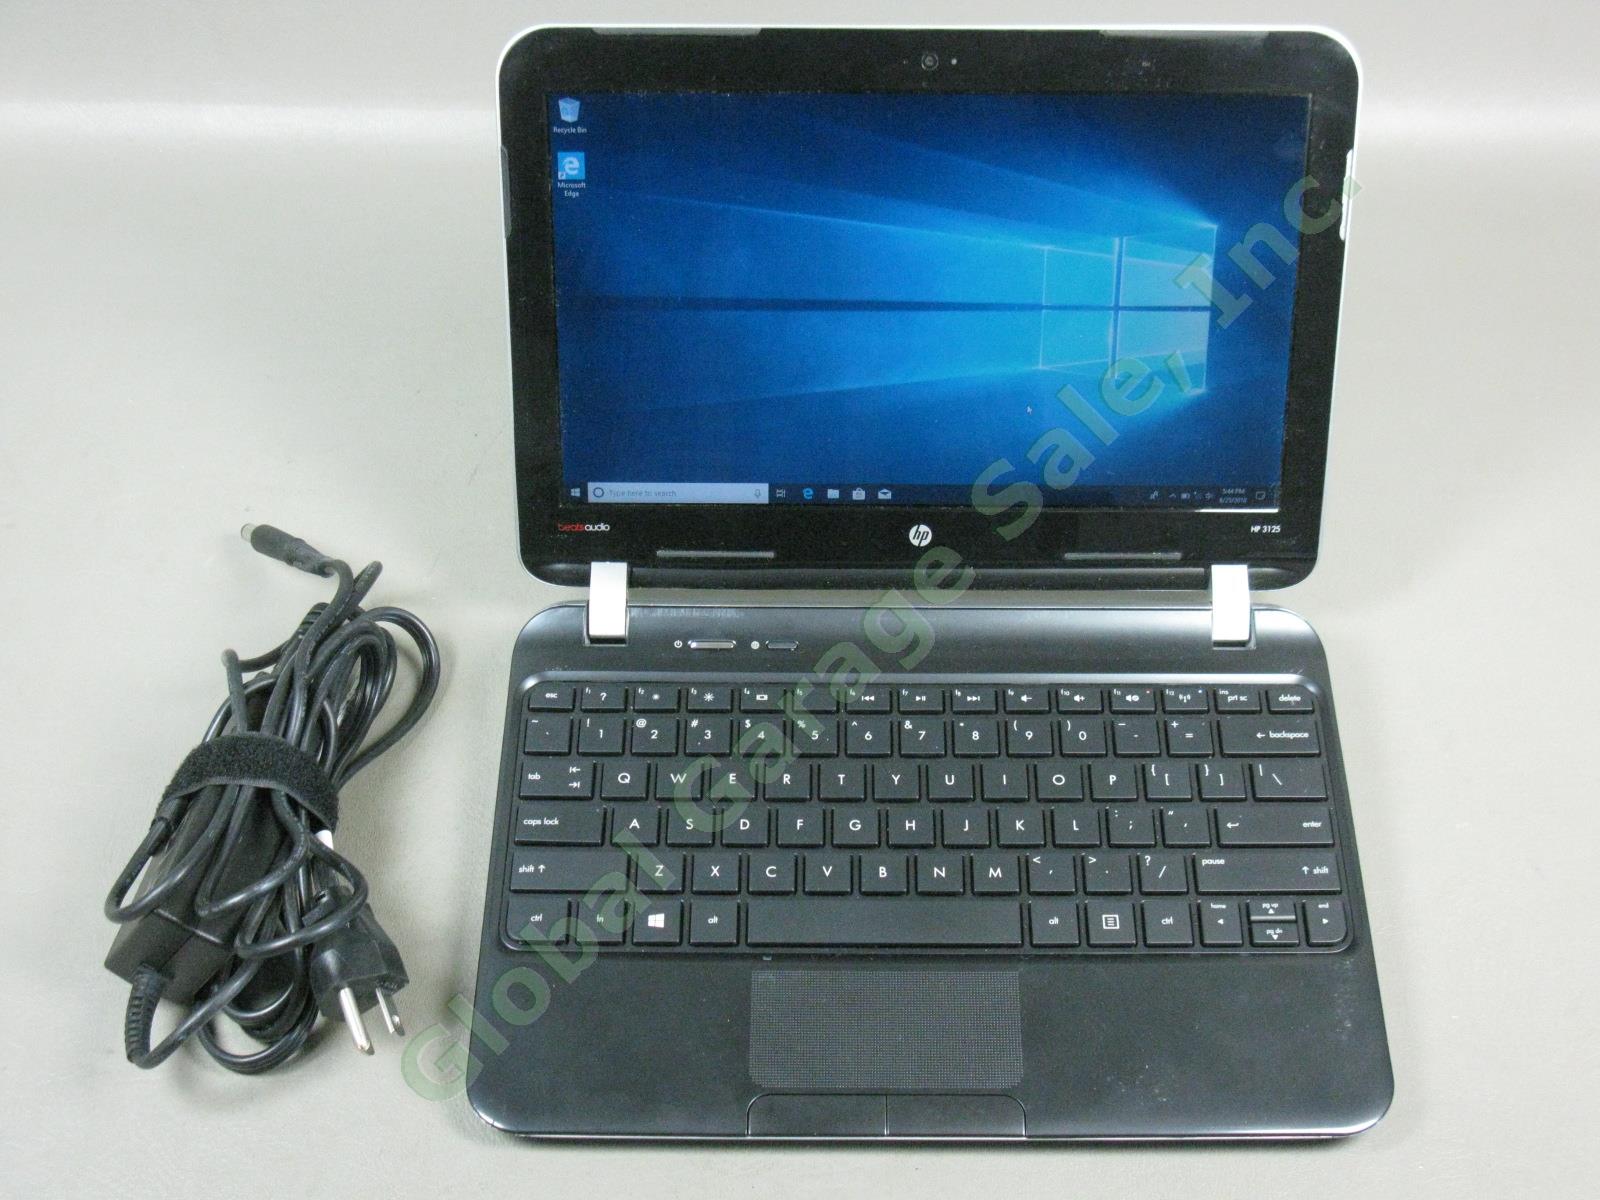 HP 3125 AMD E2-2000 1.75GHz 4GB 320GB Windows 10 Pro 11.6" Laptop Beats Audio +